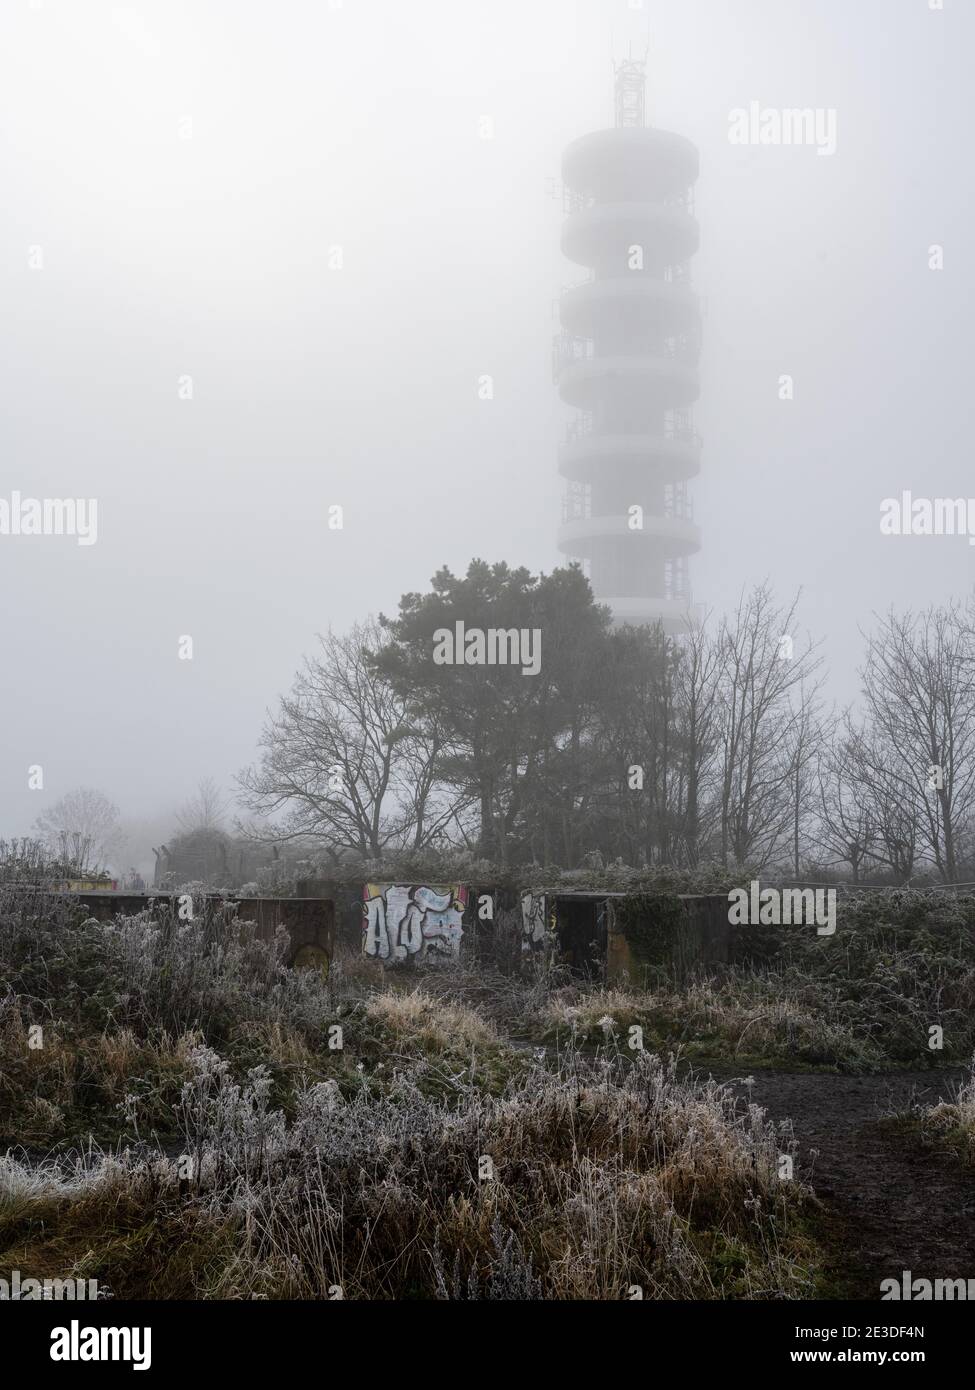 L'émetteur BT de Purdown est enveloppé de brouillard derrière les restes abandonnés de la batterie antiaérienne lourde dans le parc Stoke de Bristol. Banque D'Images